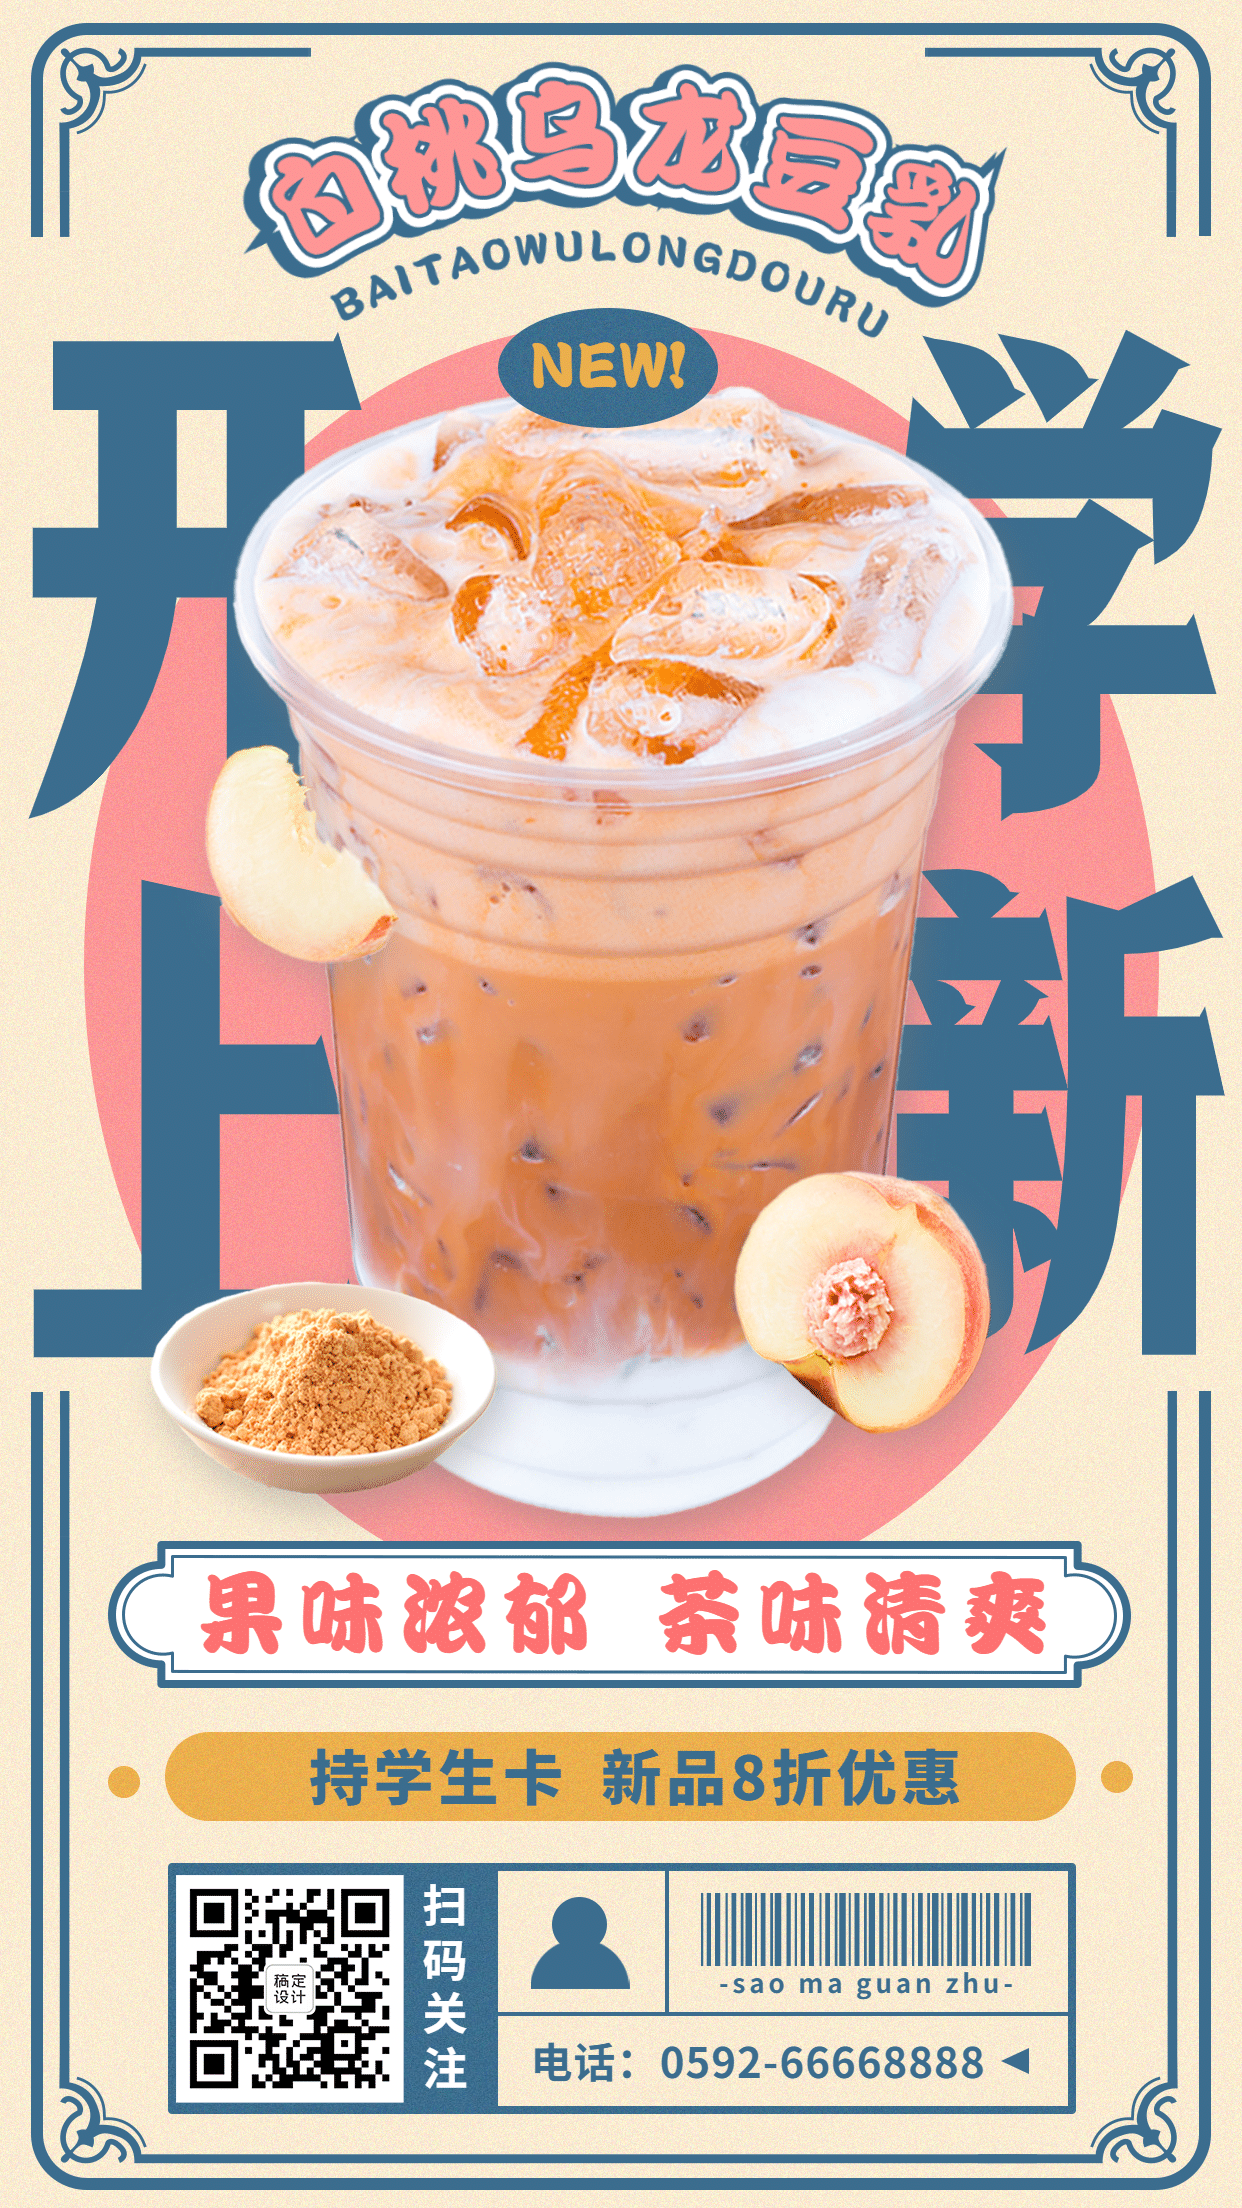 奶茶饮品新品促销实景竖版海报预览效果